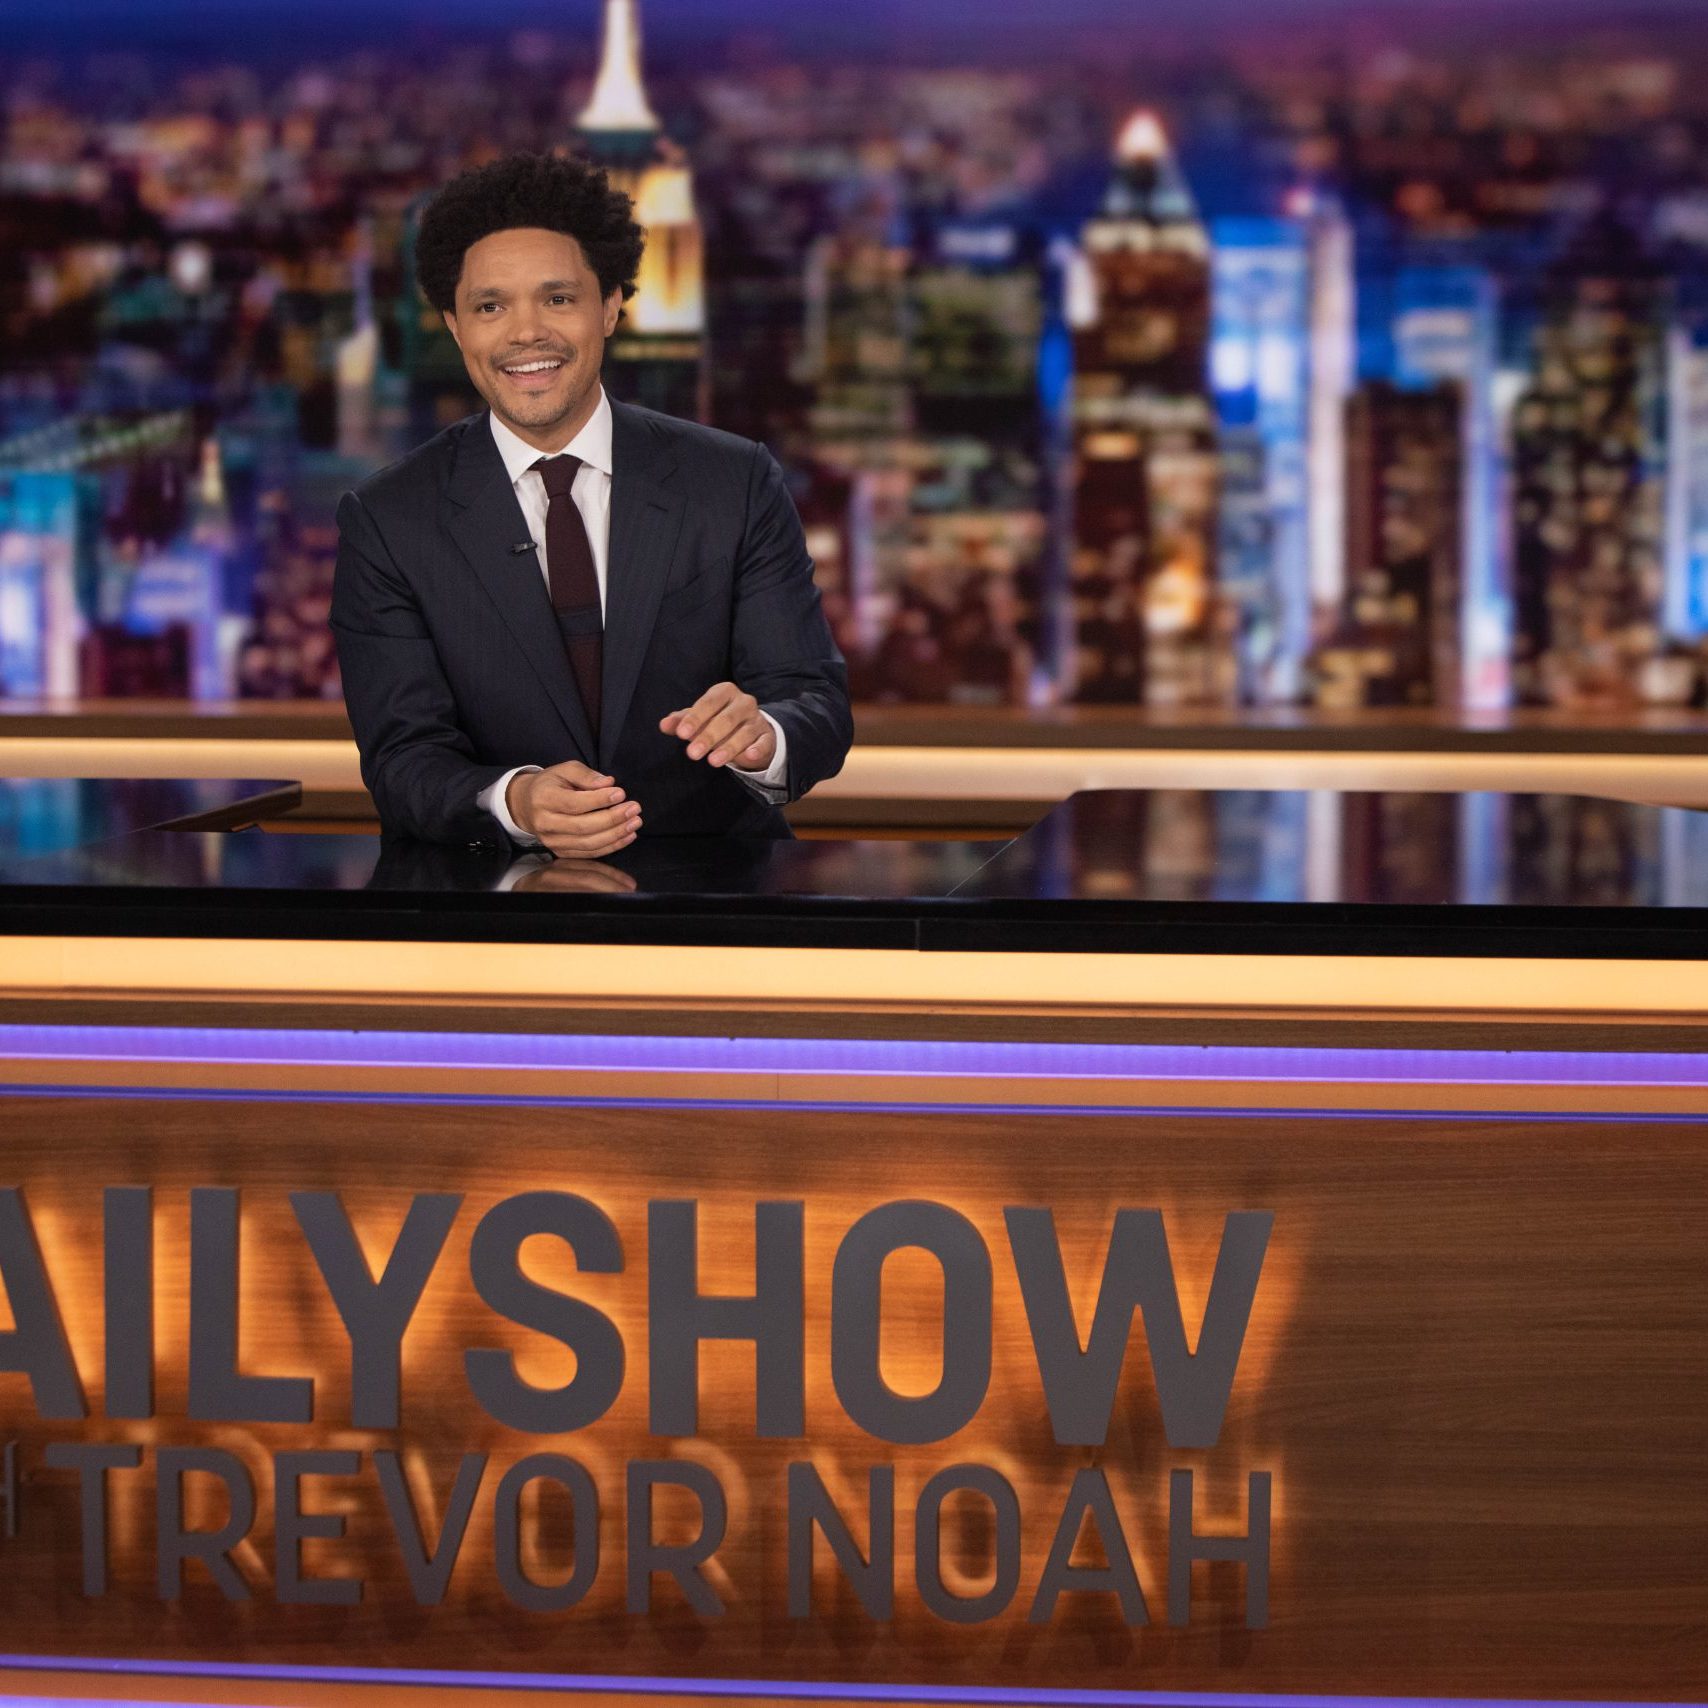 Daily Show with Trevor-Noah